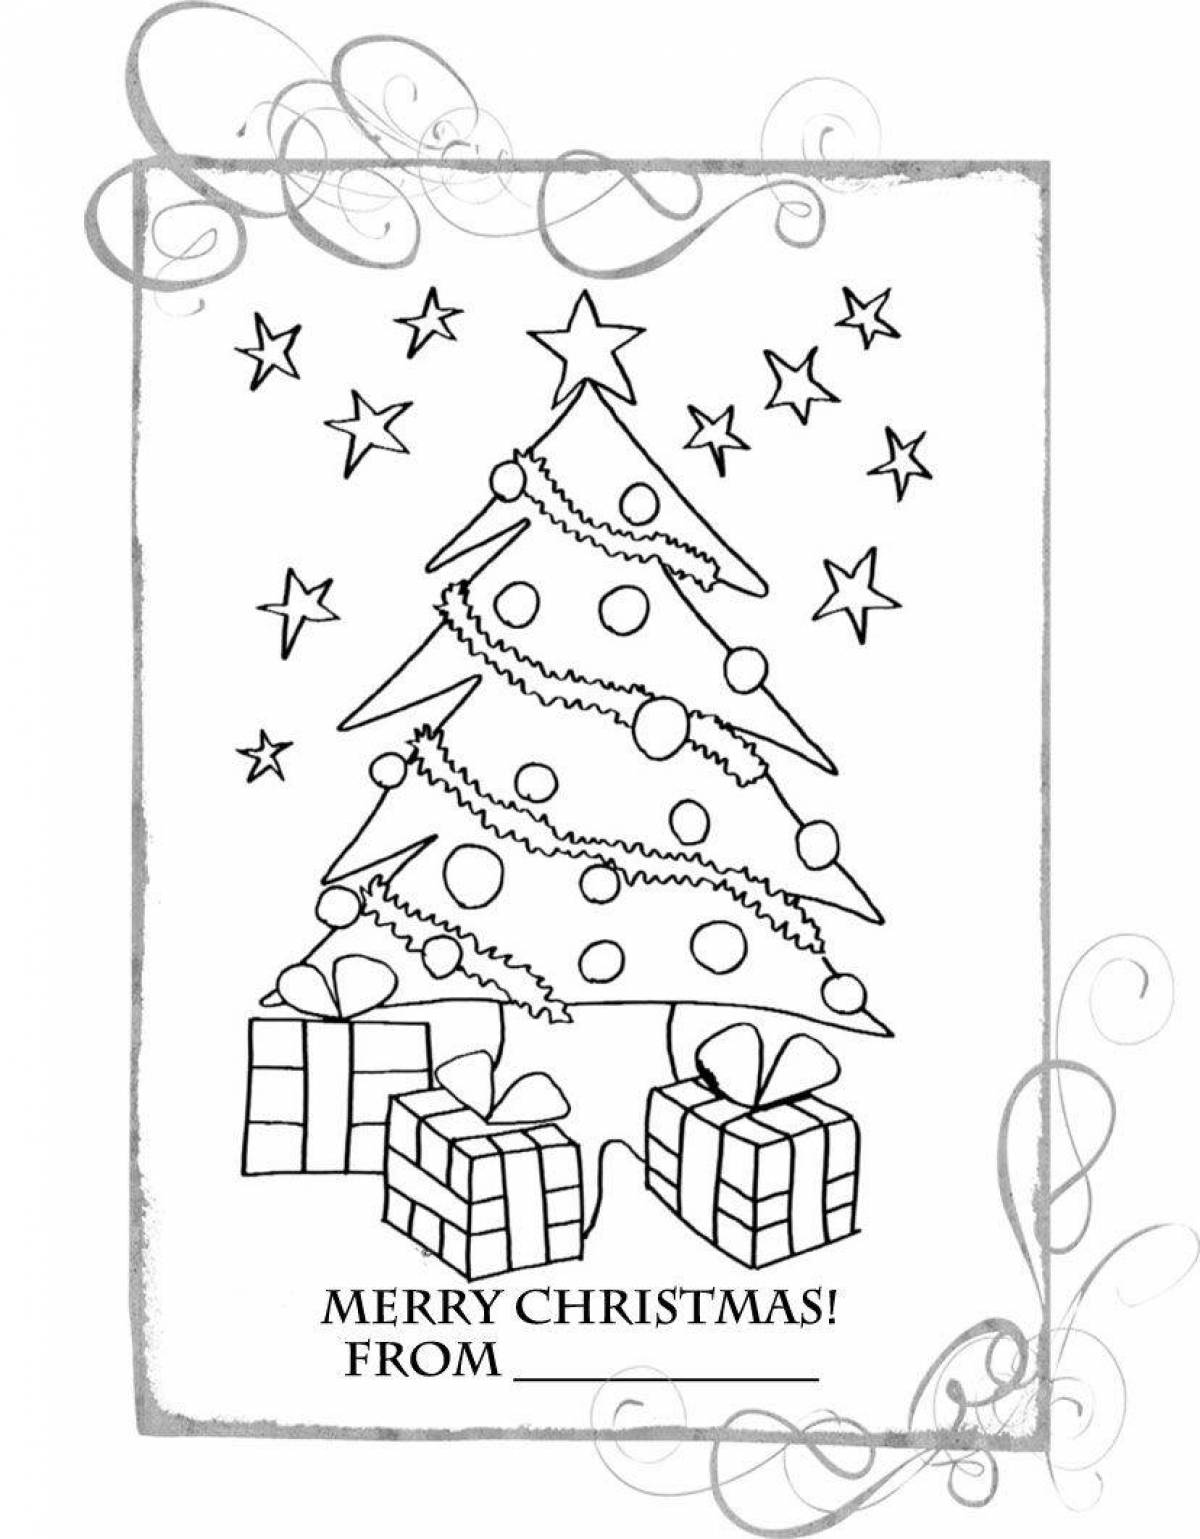 Adorable Christmas card coloring book